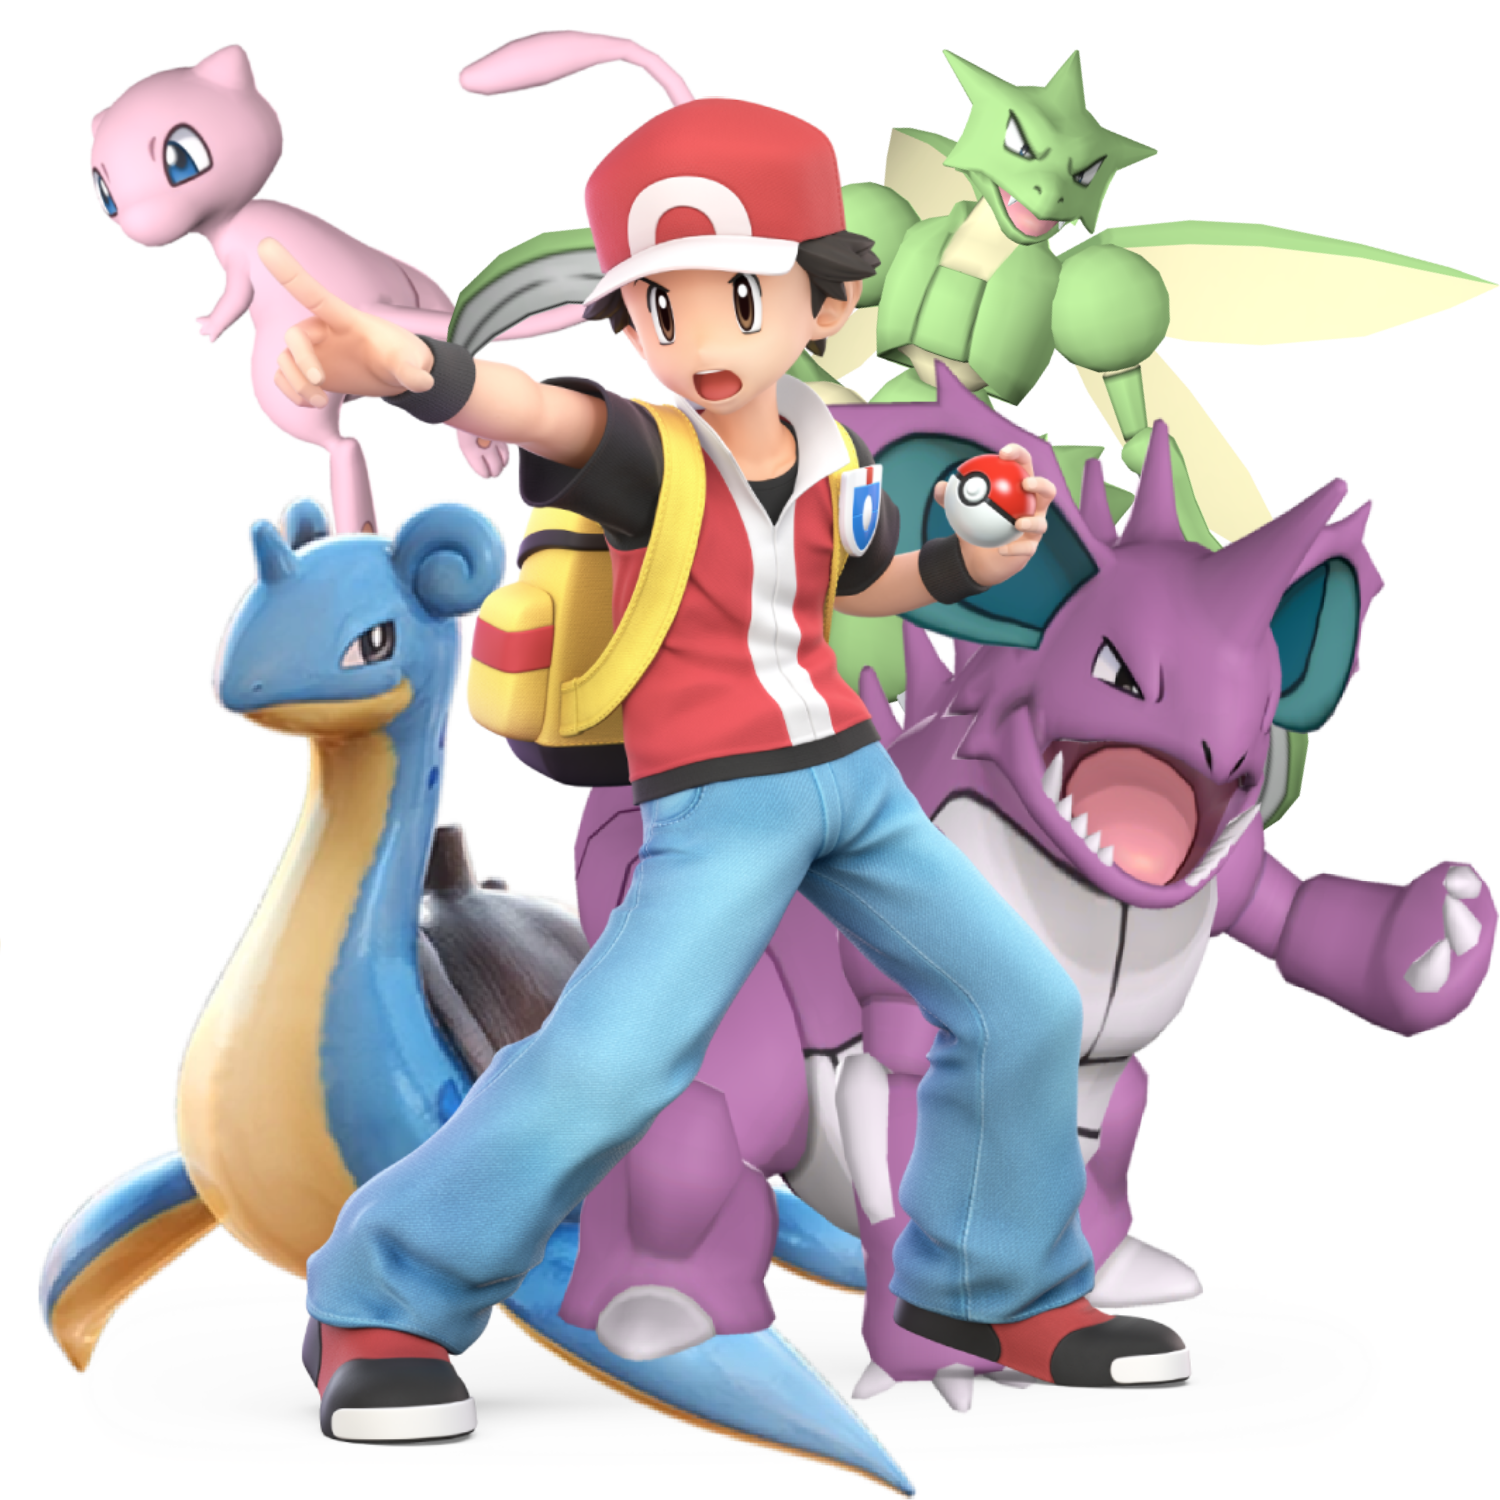 Pokémon Trainer, Pokémon Wiki